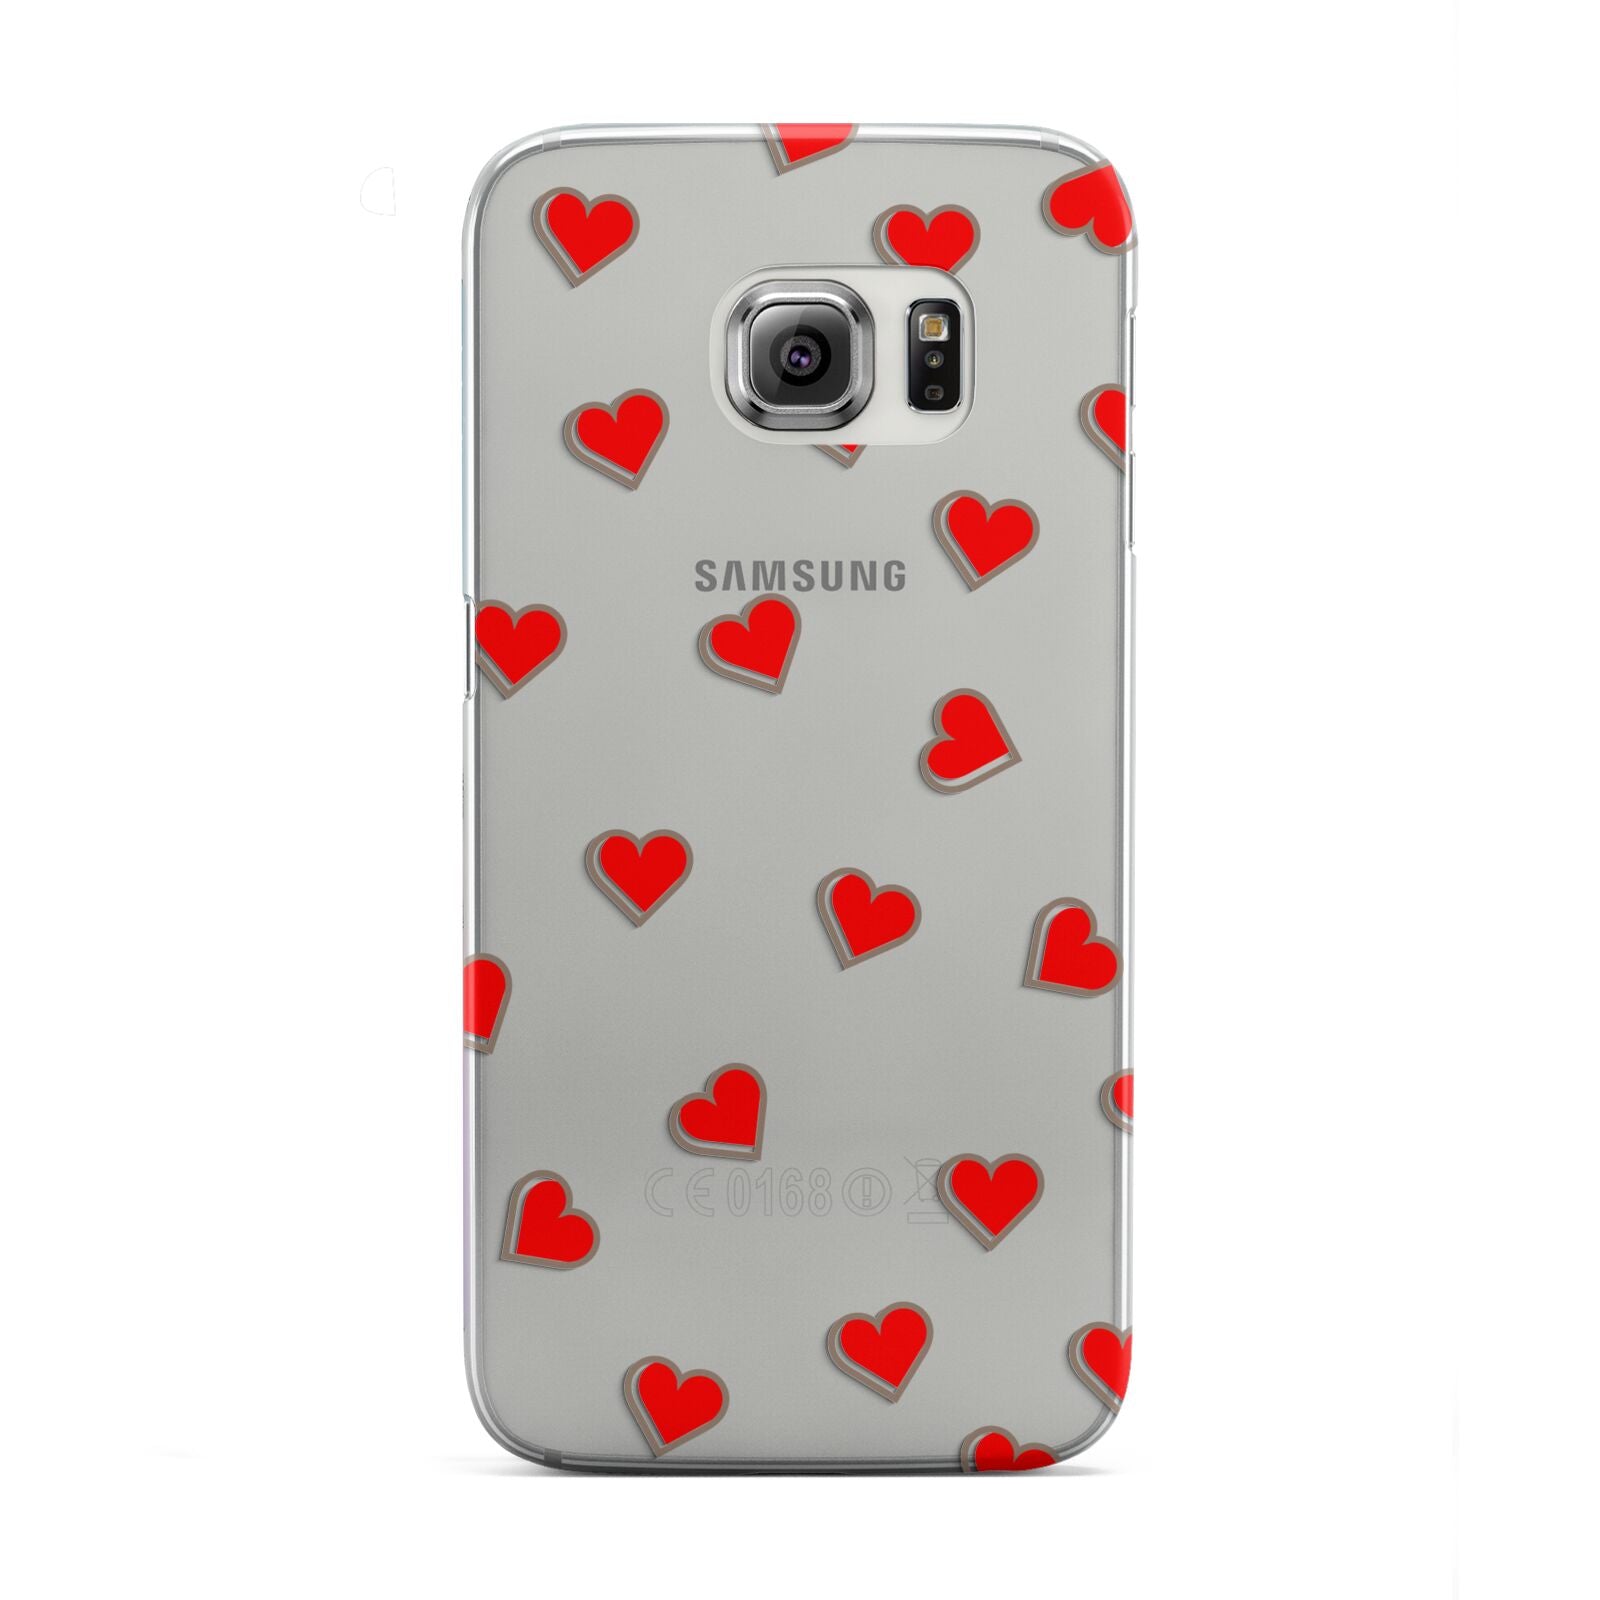 Cute Red Hearts Samsung Galaxy S6 Edge Case